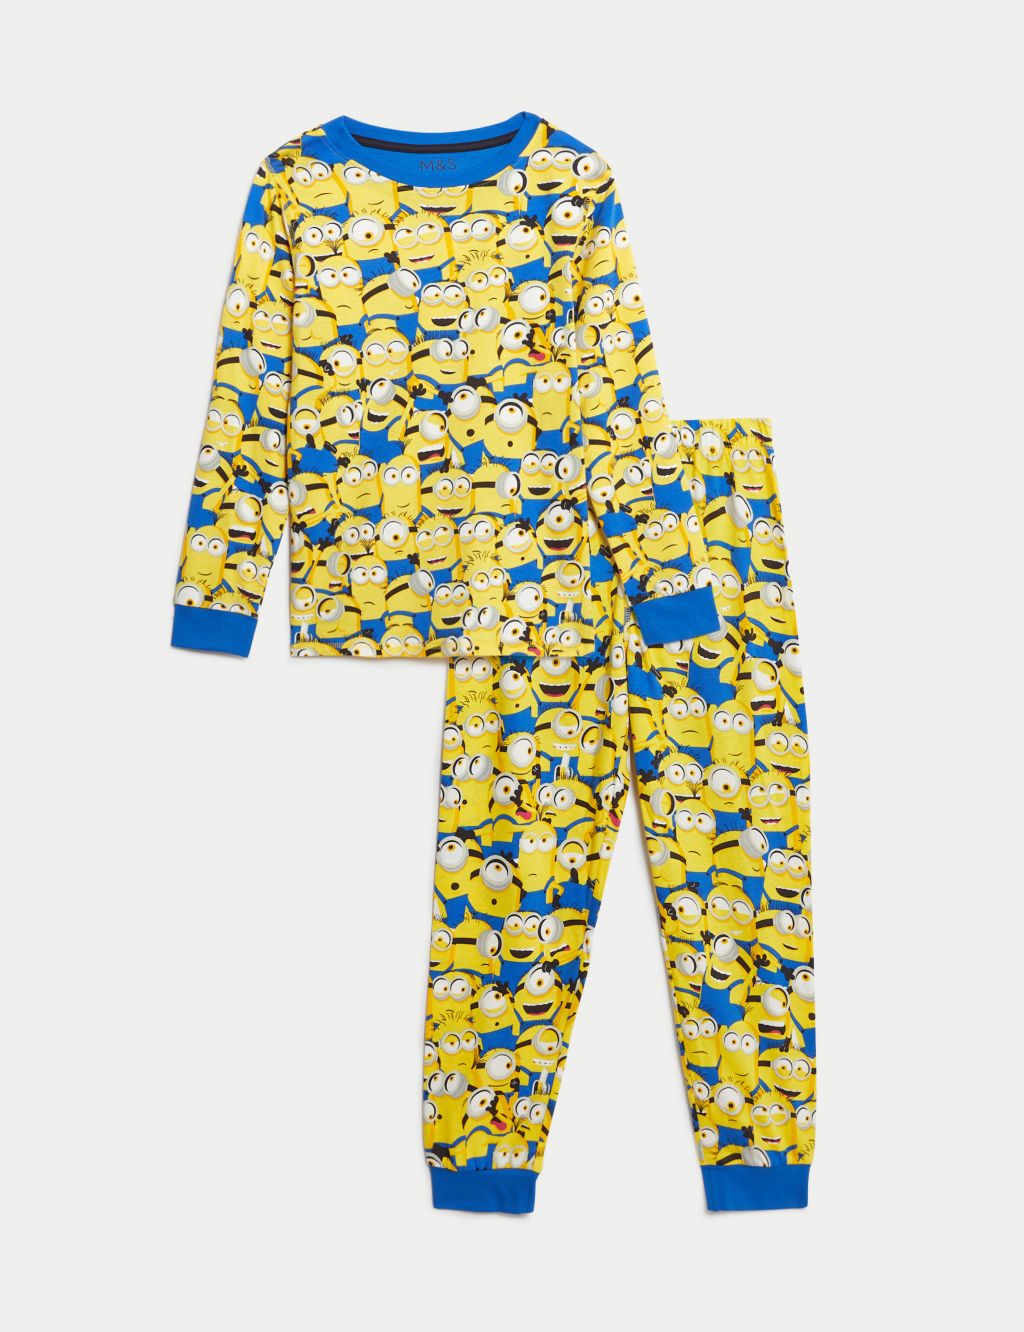 Minions™ Pyjamas (3-16 Yrs) image 2